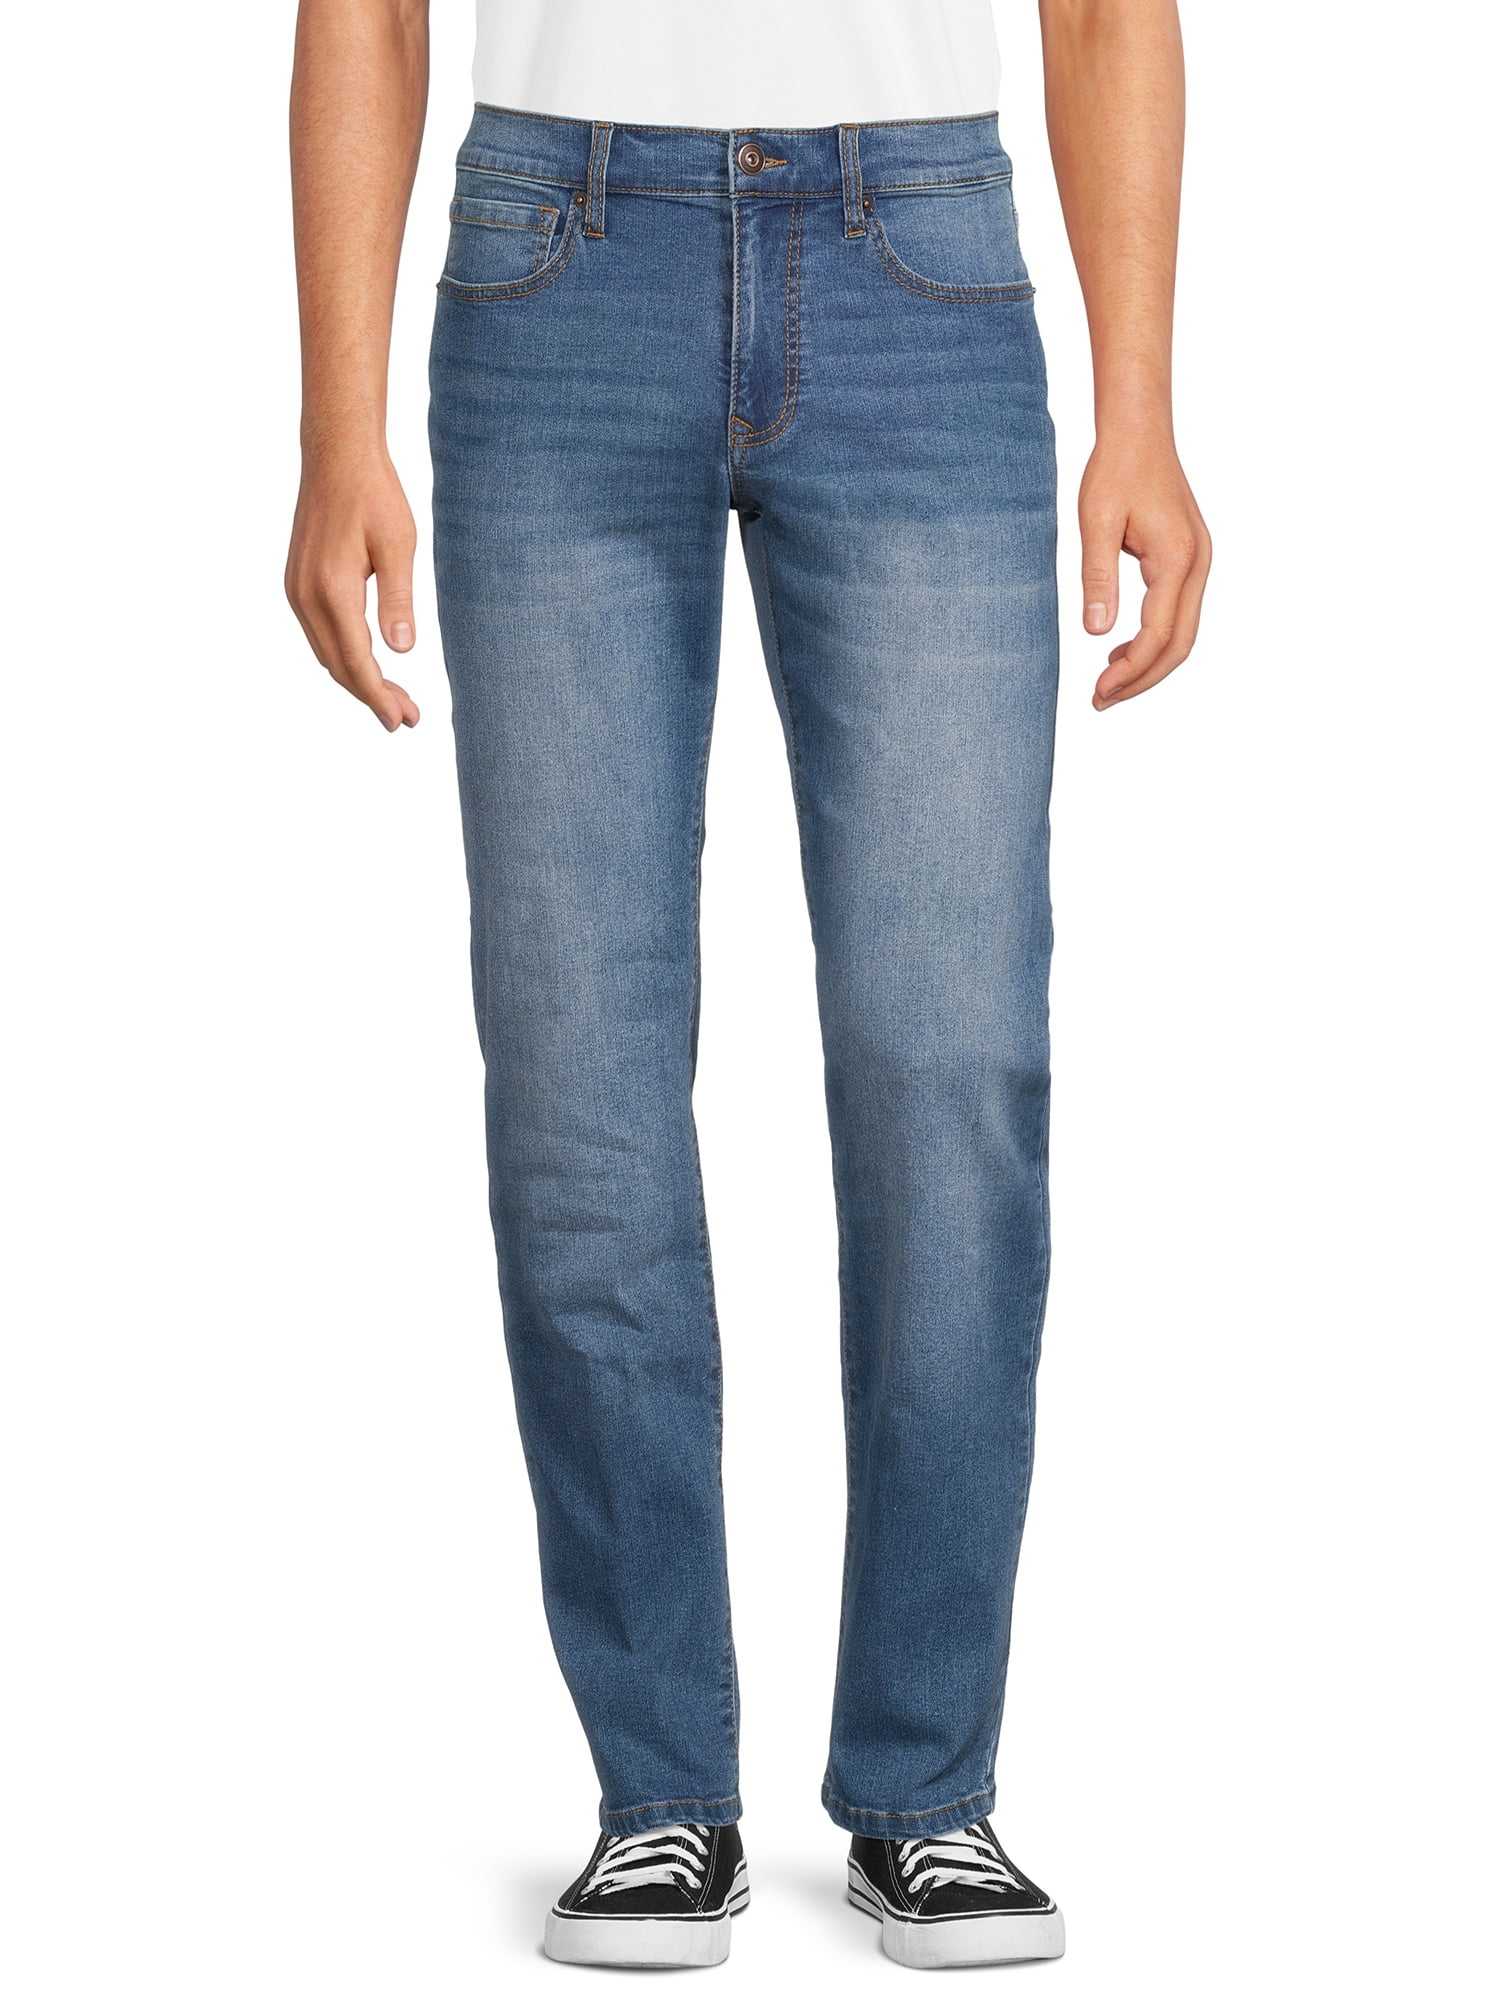 Lazer Pointe Men's Flex Denim Straight Fit Jeans, Waist Sizes 30-38